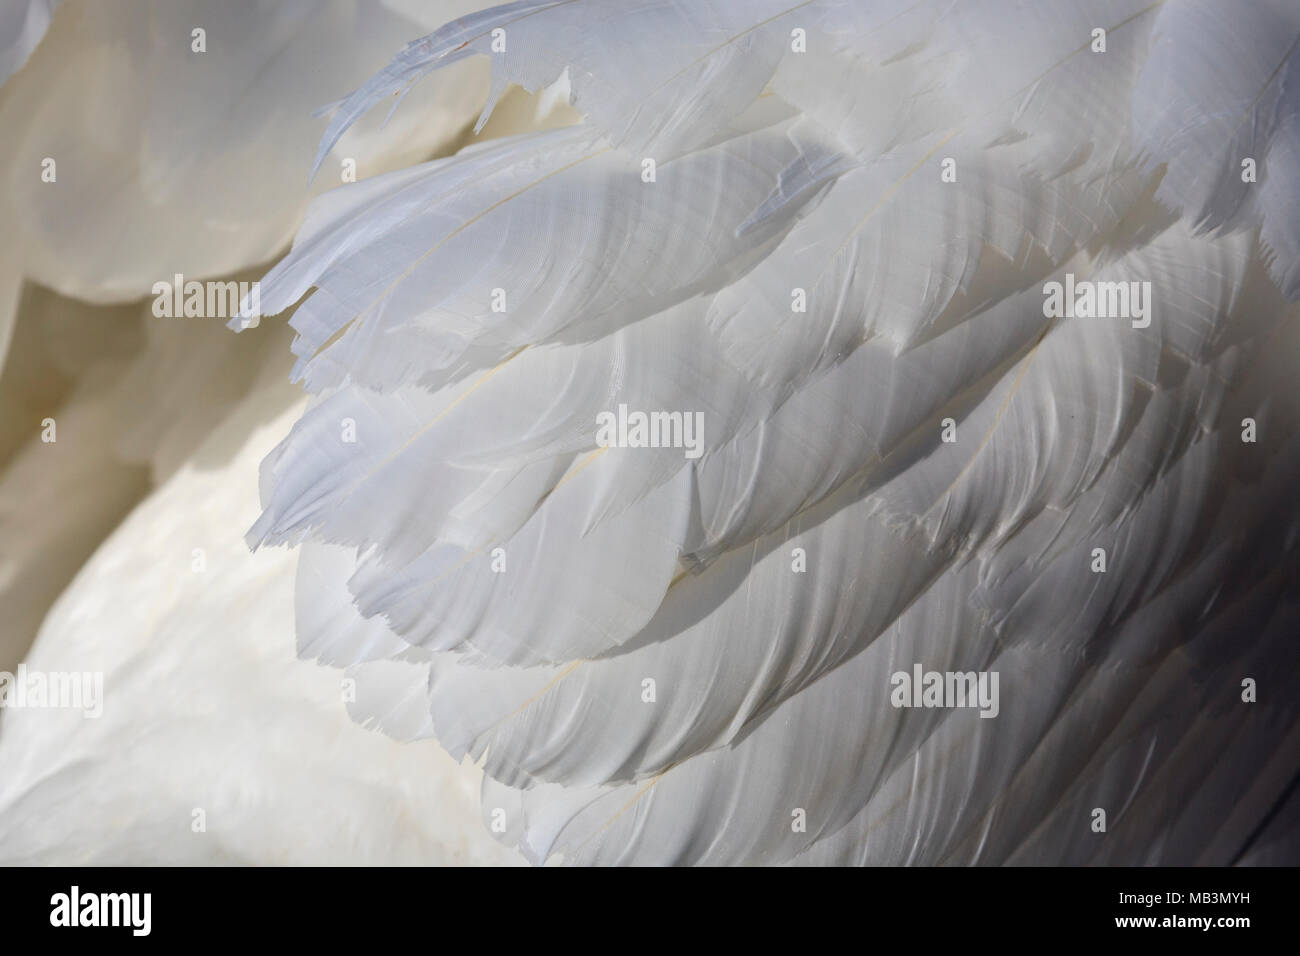 Dettaglio delle piume di cigno bianco Foto Stock